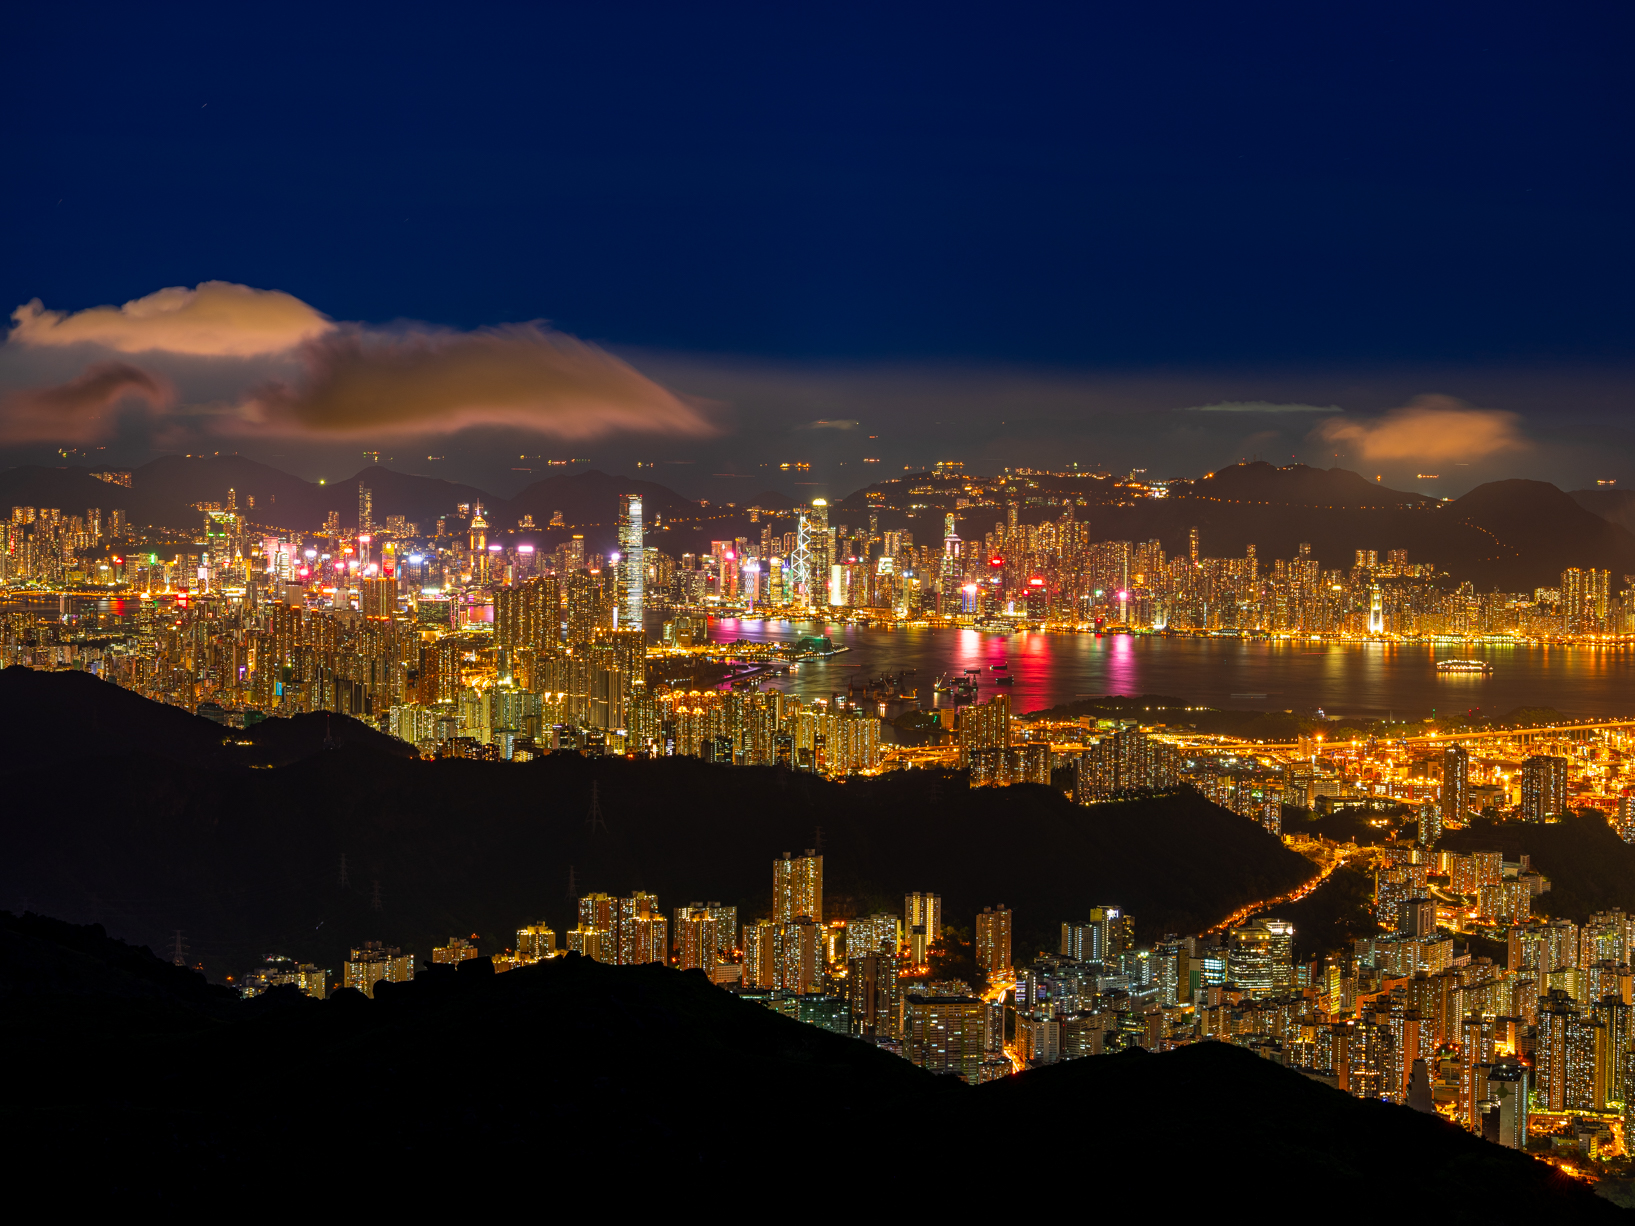 hk_c_香港的夜景享負盛名，無論是港島區璀璨燈飾，還是九龍區的萬家燈火，都亮麗奪目。 但很多人只知道維多利亞山（太平山）是香港必去看夜景的。攝於大帽山山頂.jpg